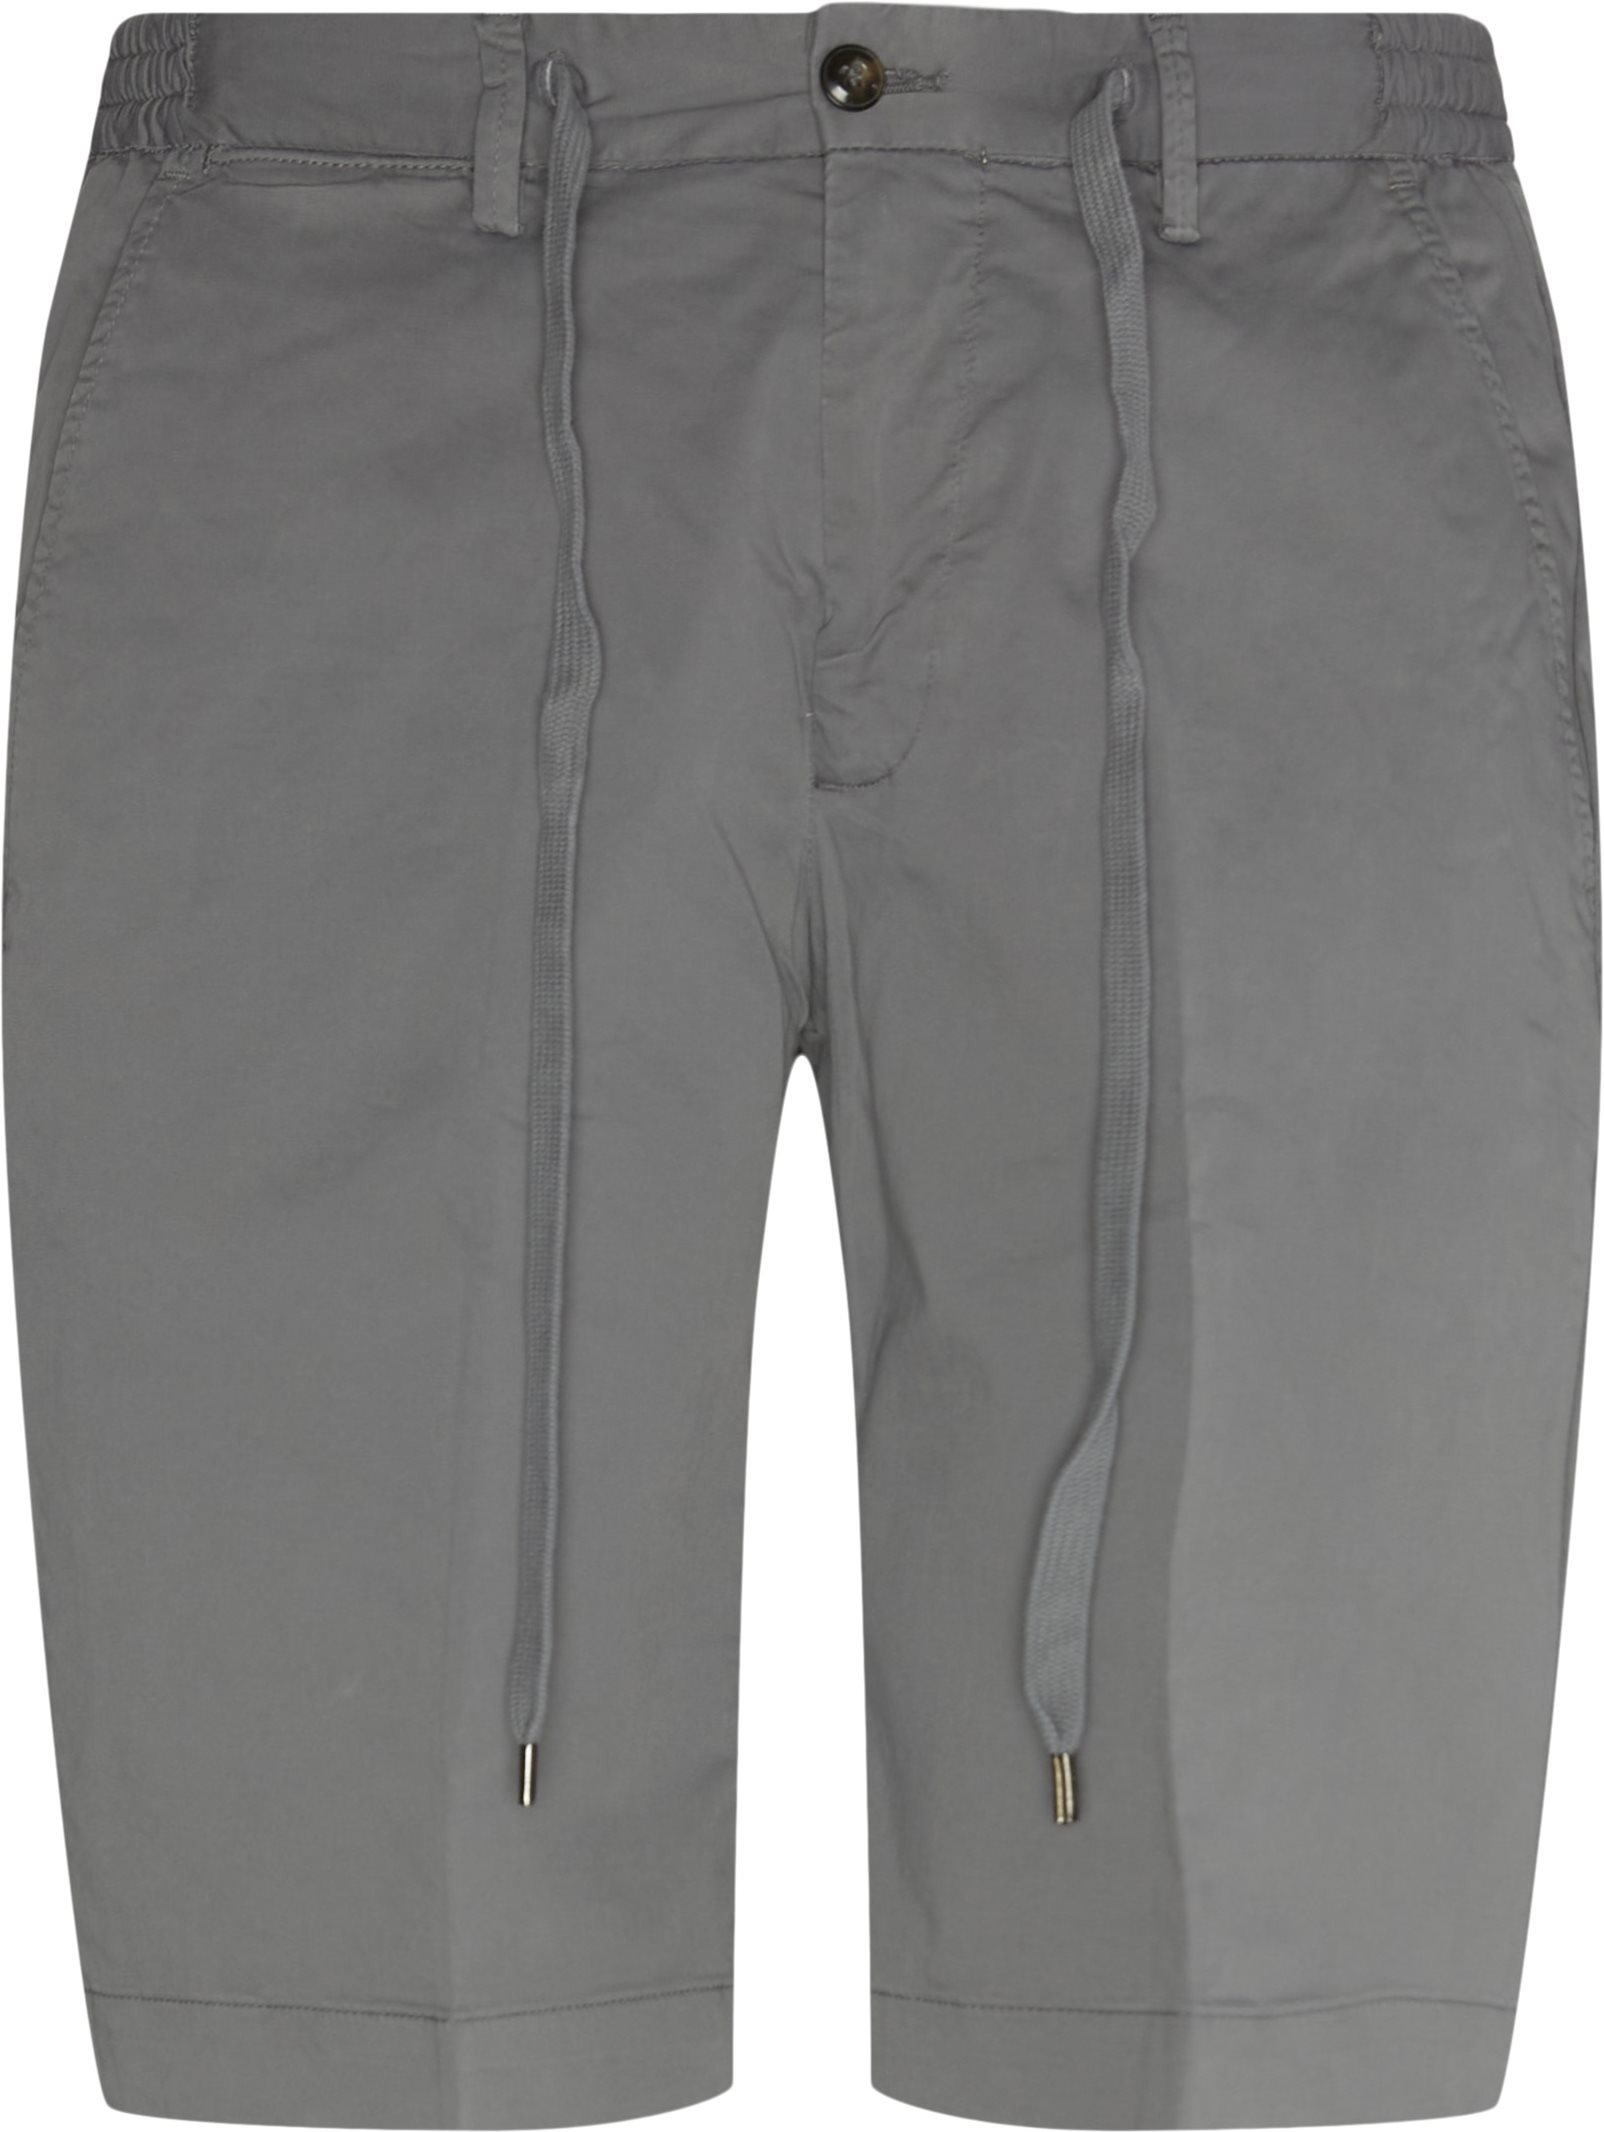 Malibu Shorts - Shorts - Regular fit - Grey